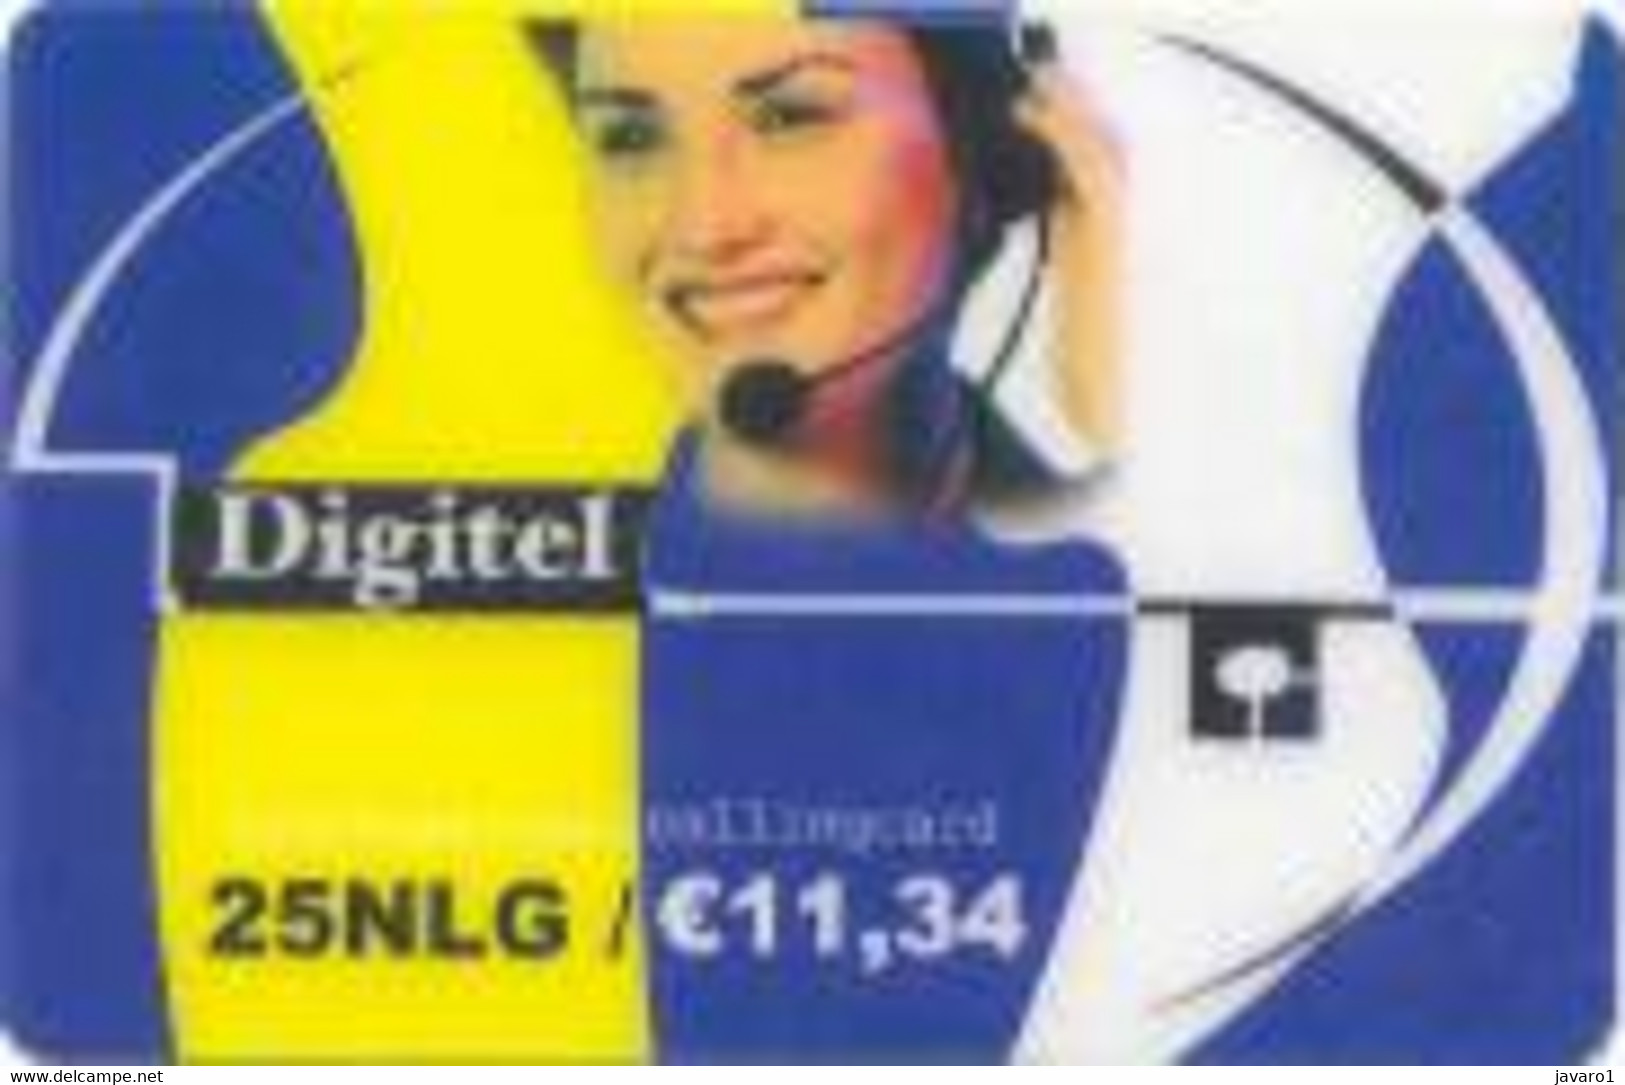 NETHERLAND : NED20 25NLG/e 11,34 DIGITEL Web+Phoning/ WHITE Rev. USED - To Identify